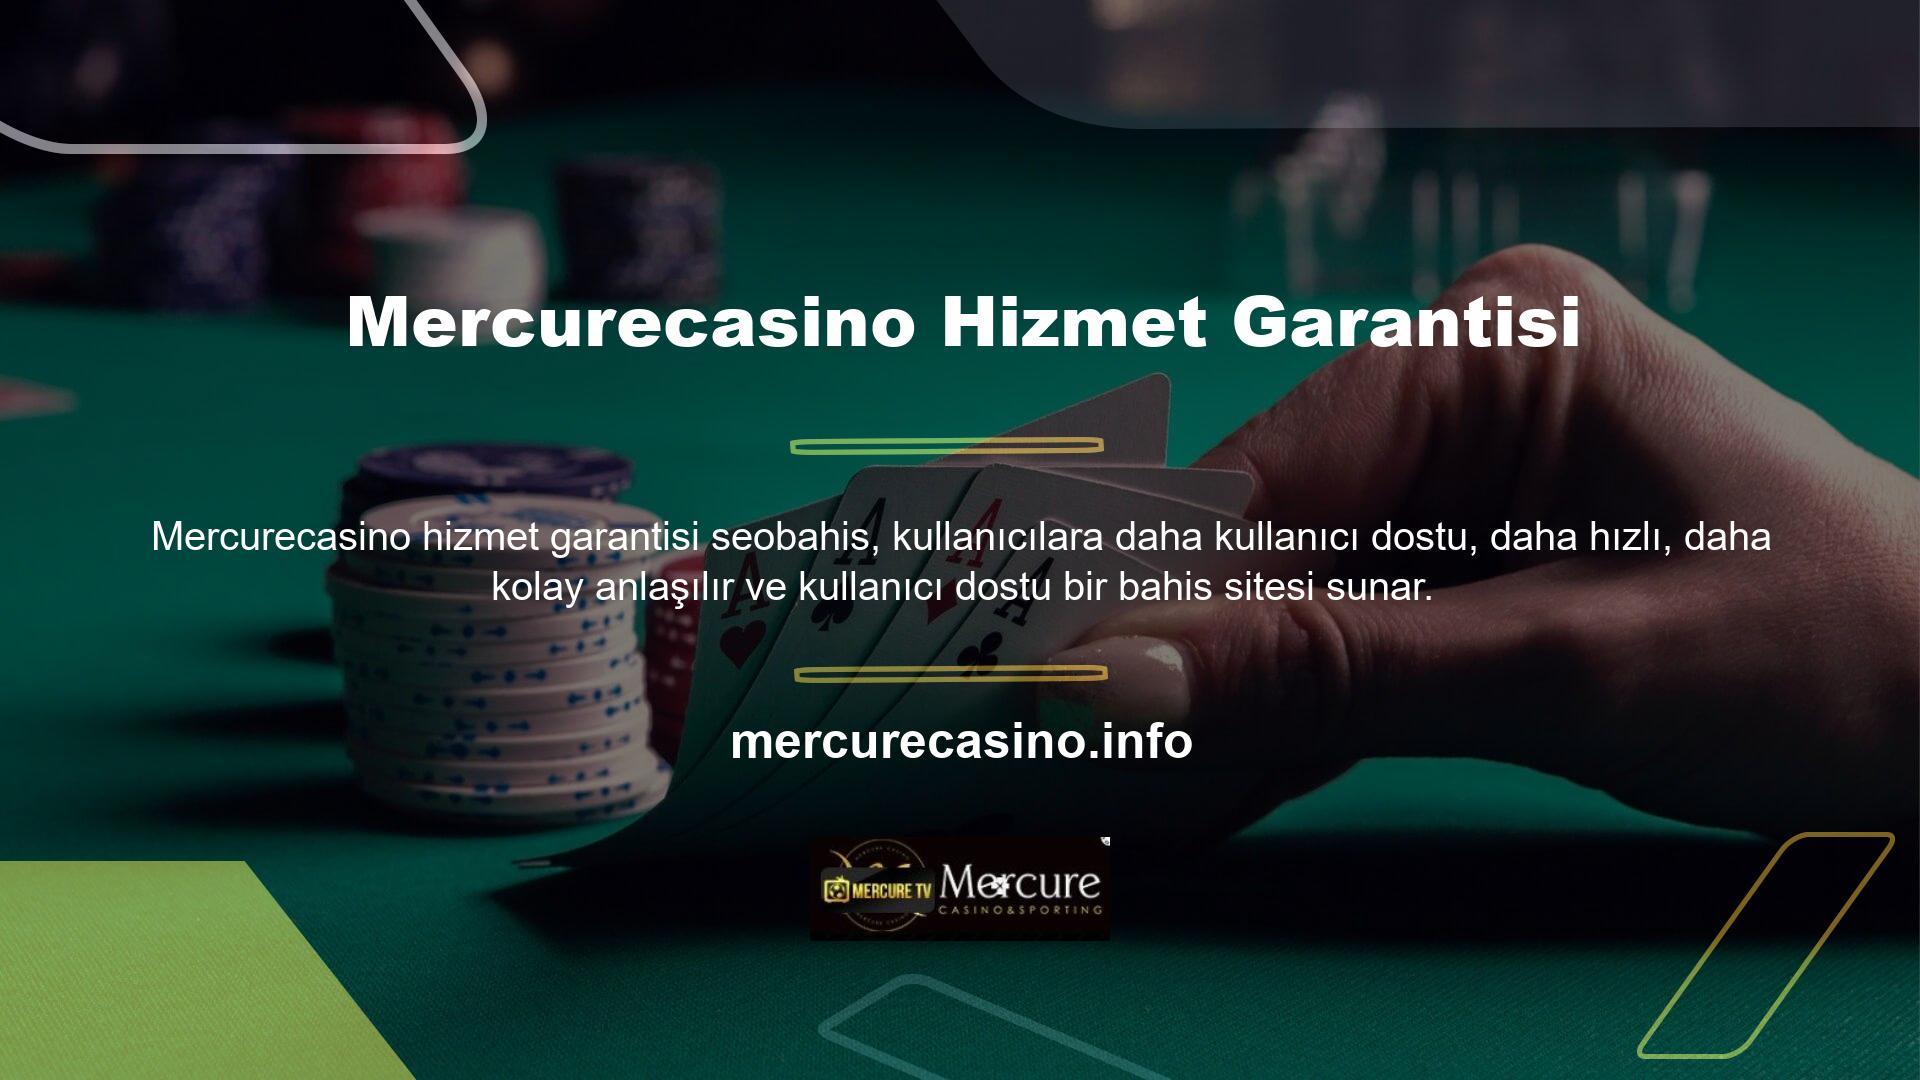 Bununla birlikte, Mercurecasino hizmetlerinin kişisel bilgilerinin ve web sitesi üyelerinin gizliliğini ve korunmasını garanti eden çok önemli casino sitelerinden biri için güvenlik sağlar